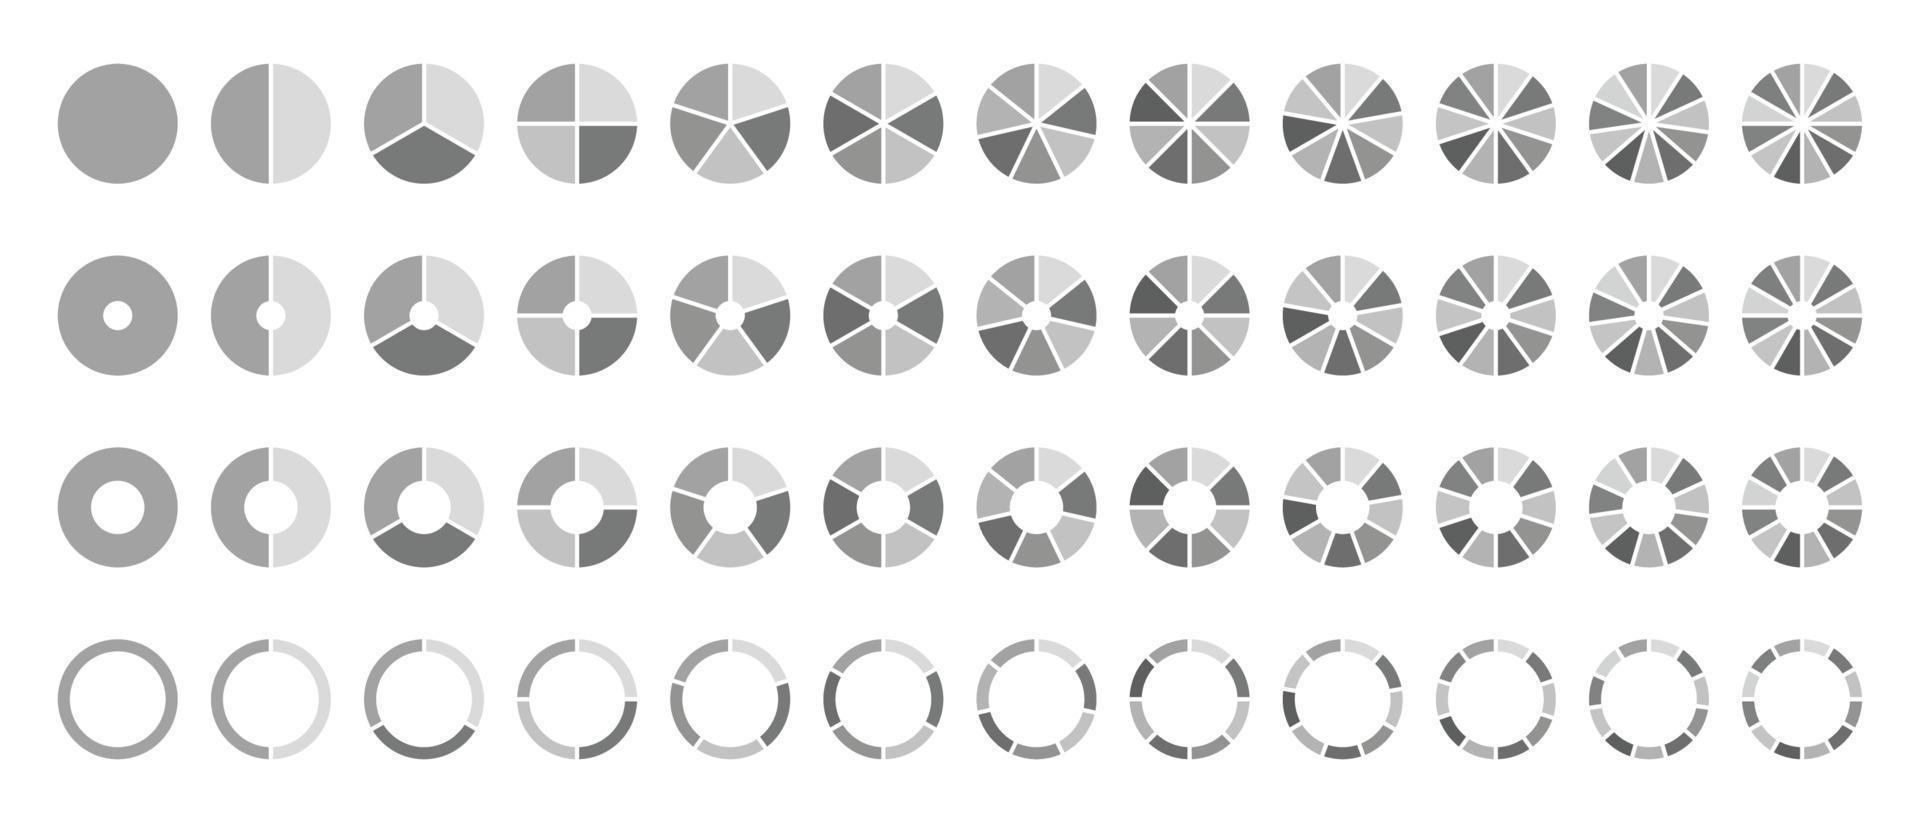 grigio cerchio torta grafici il giro diagramma sezioni o passaggi vettore